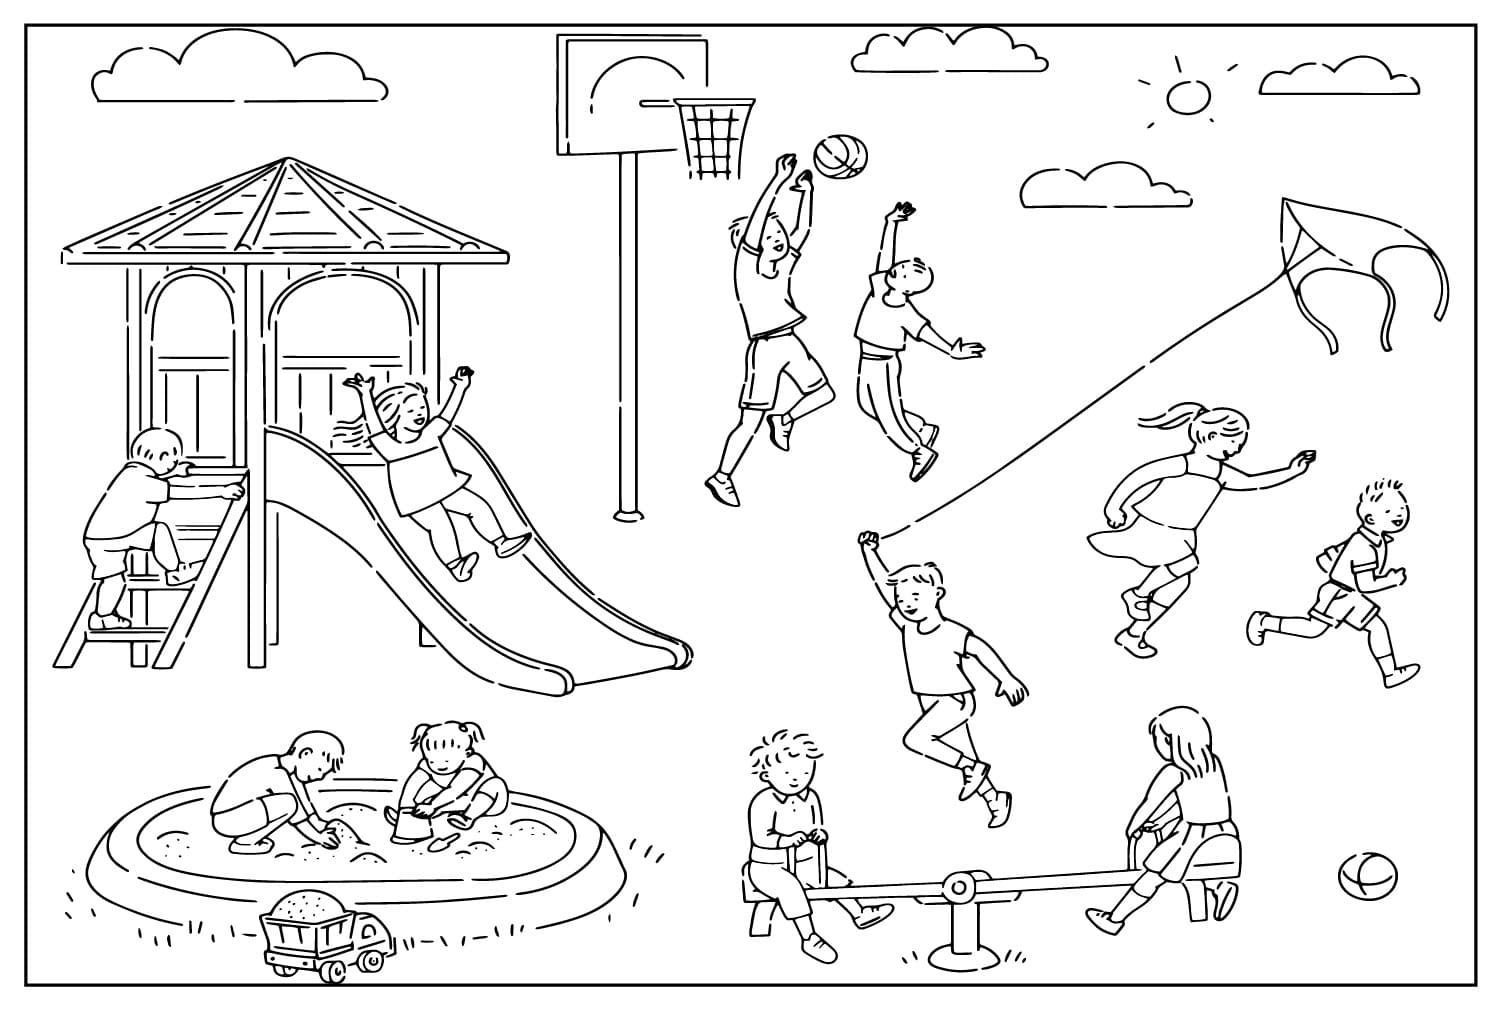 Página colorida do Playground do Playground